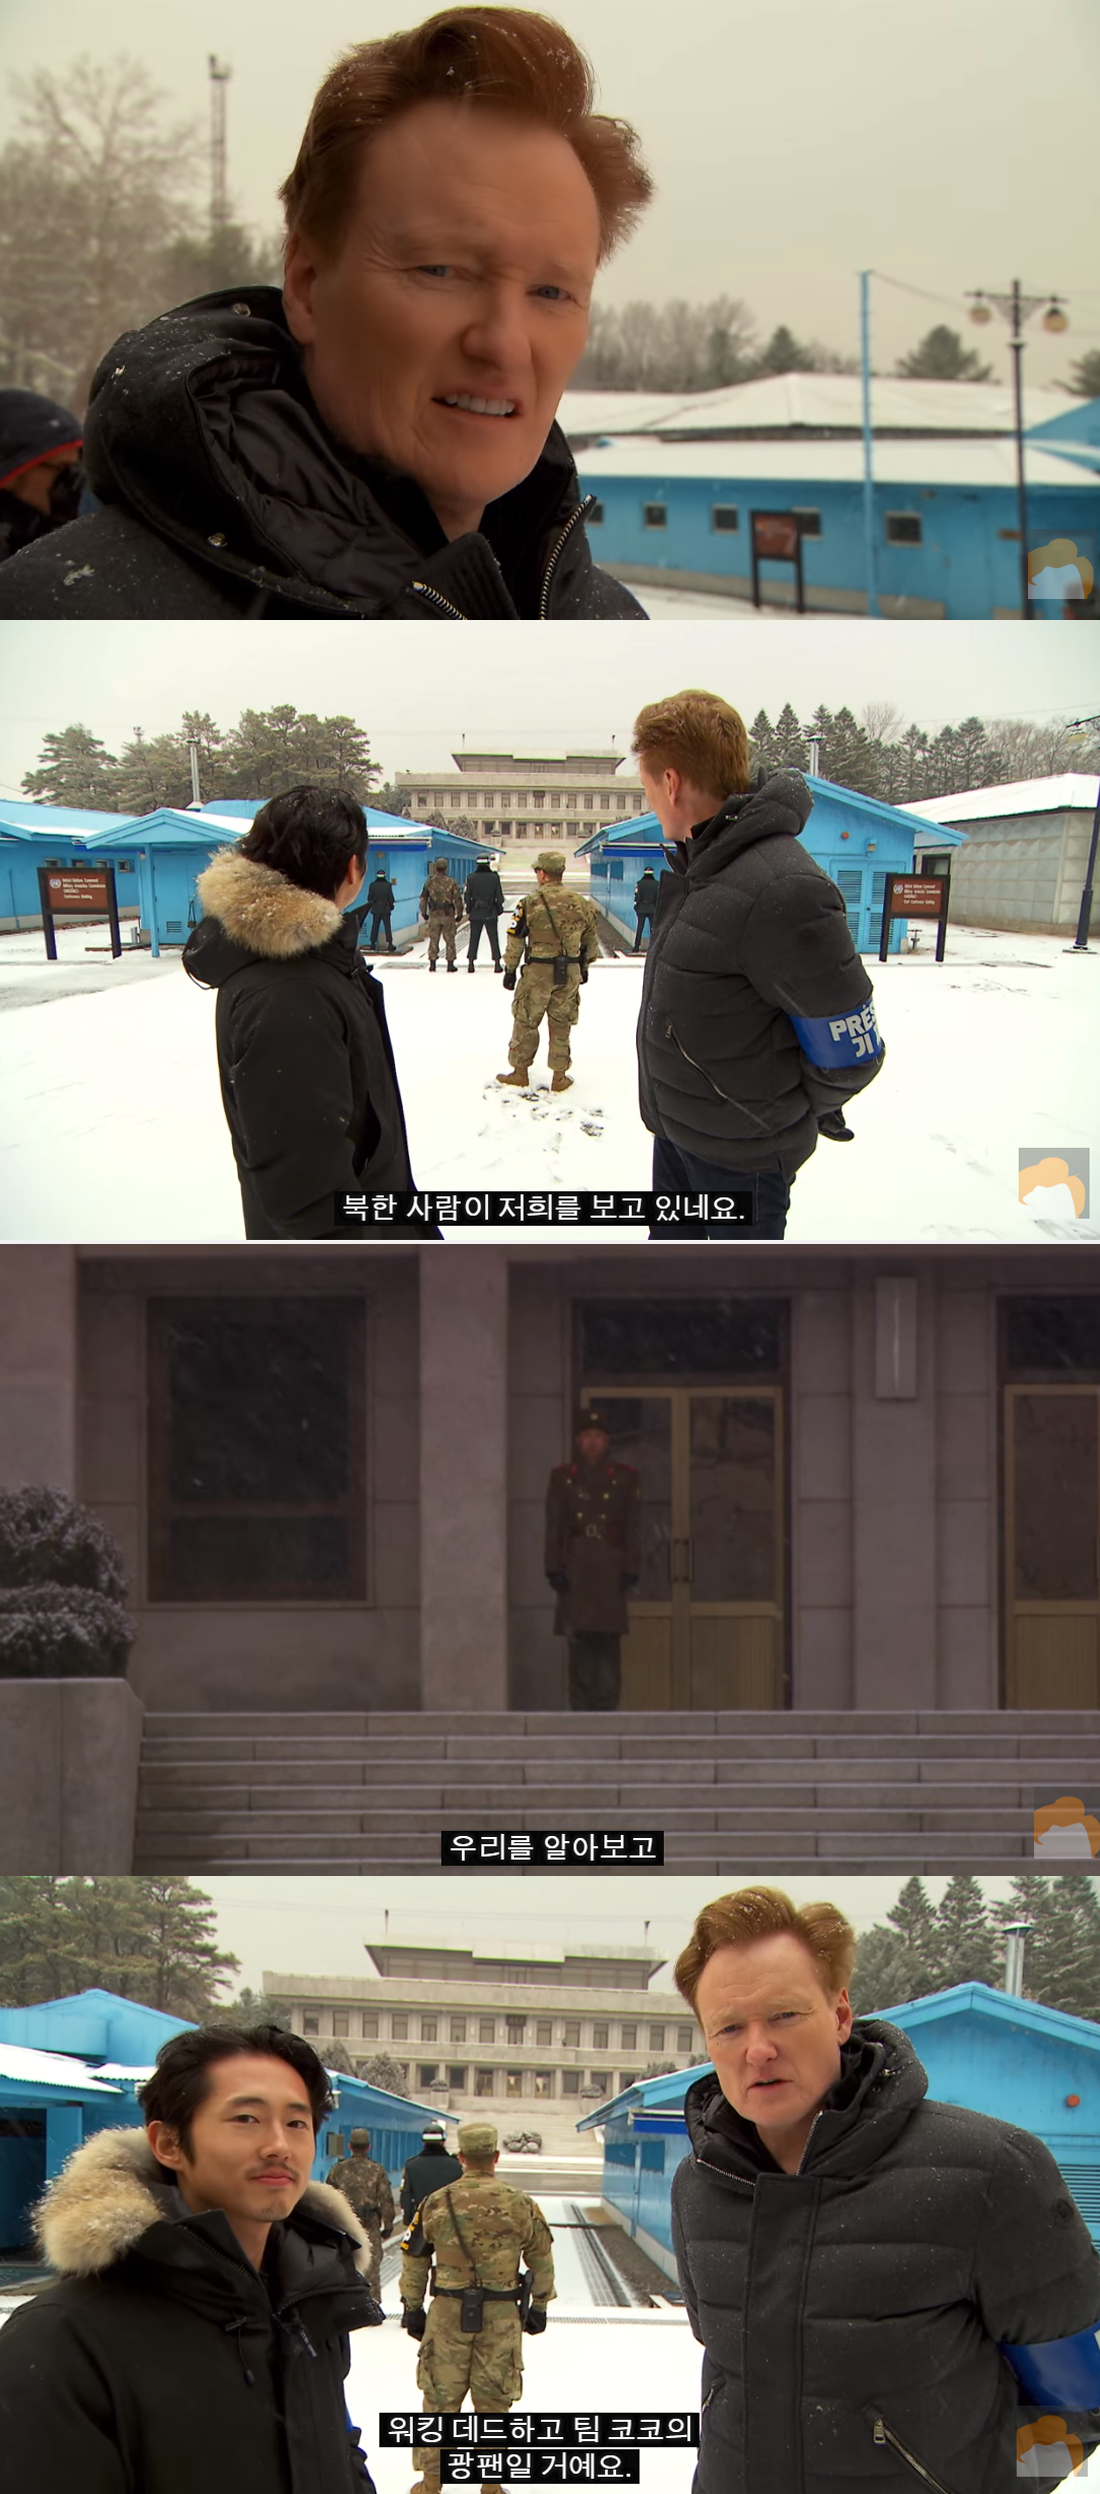 코난이 자신을 쳐다보는 북한 군인을 향해 한 말